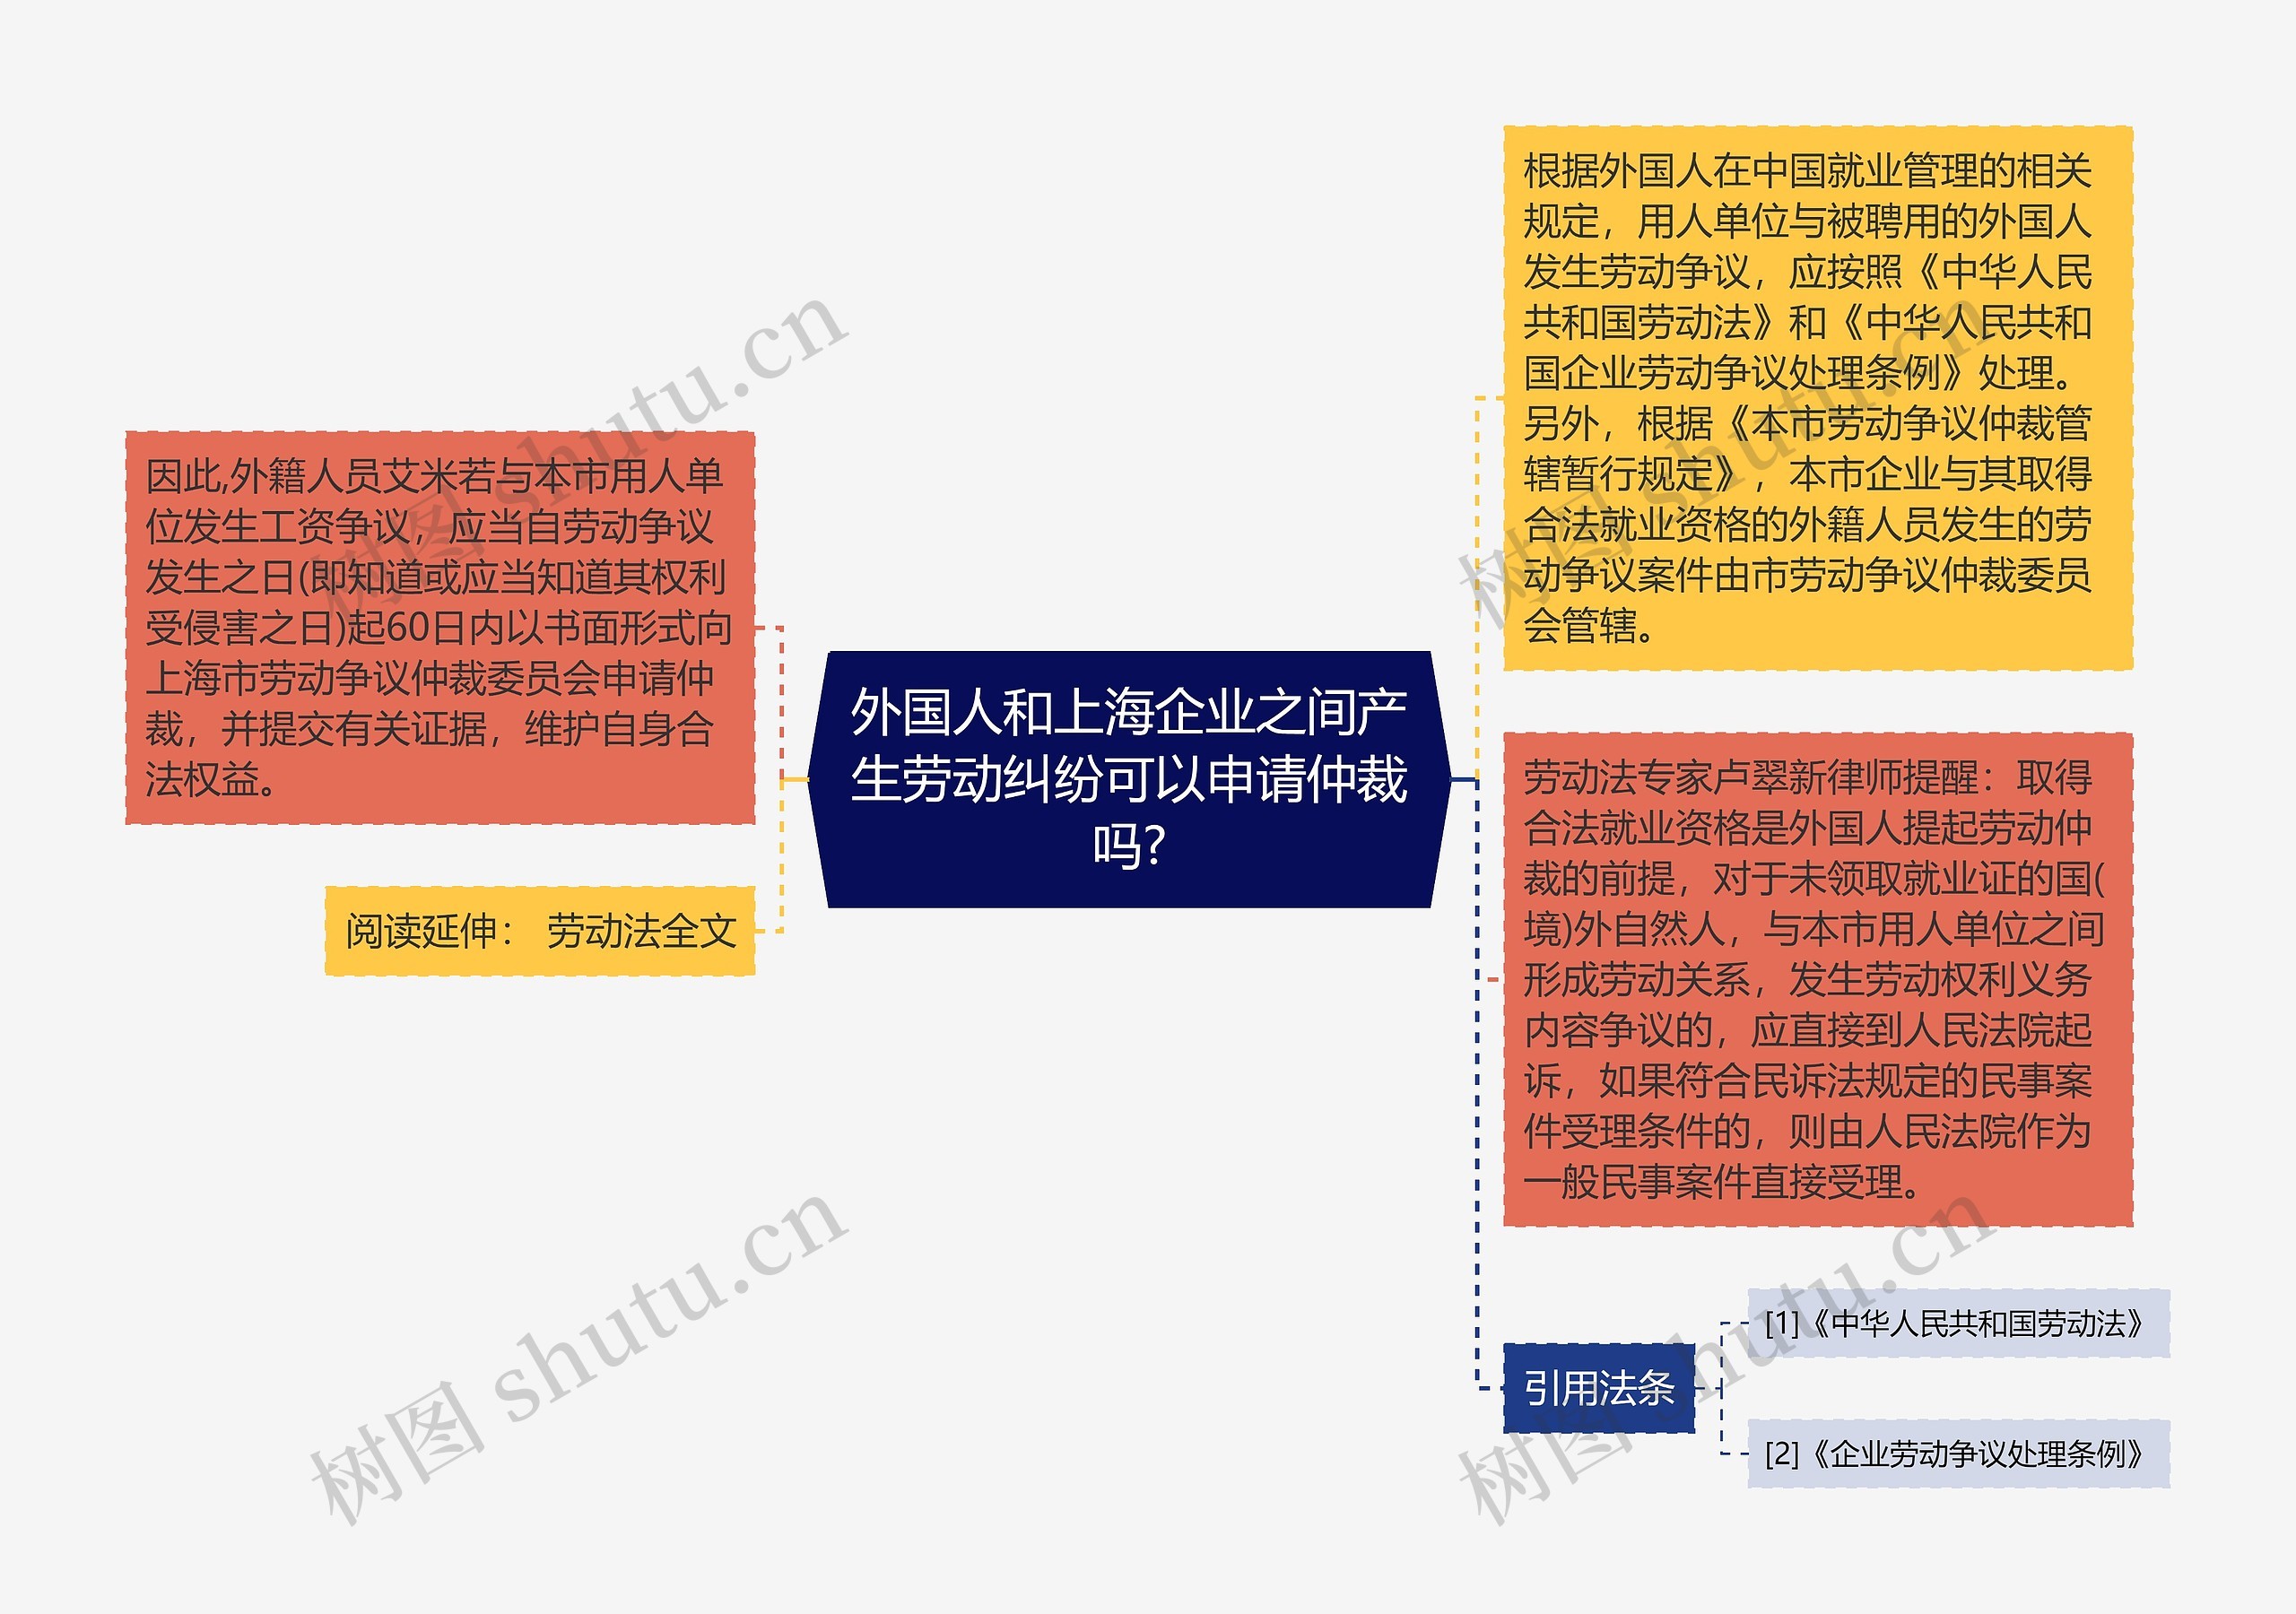 外国人和上海企业之间产生劳动纠纷可以申请仲裁吗?思维导图